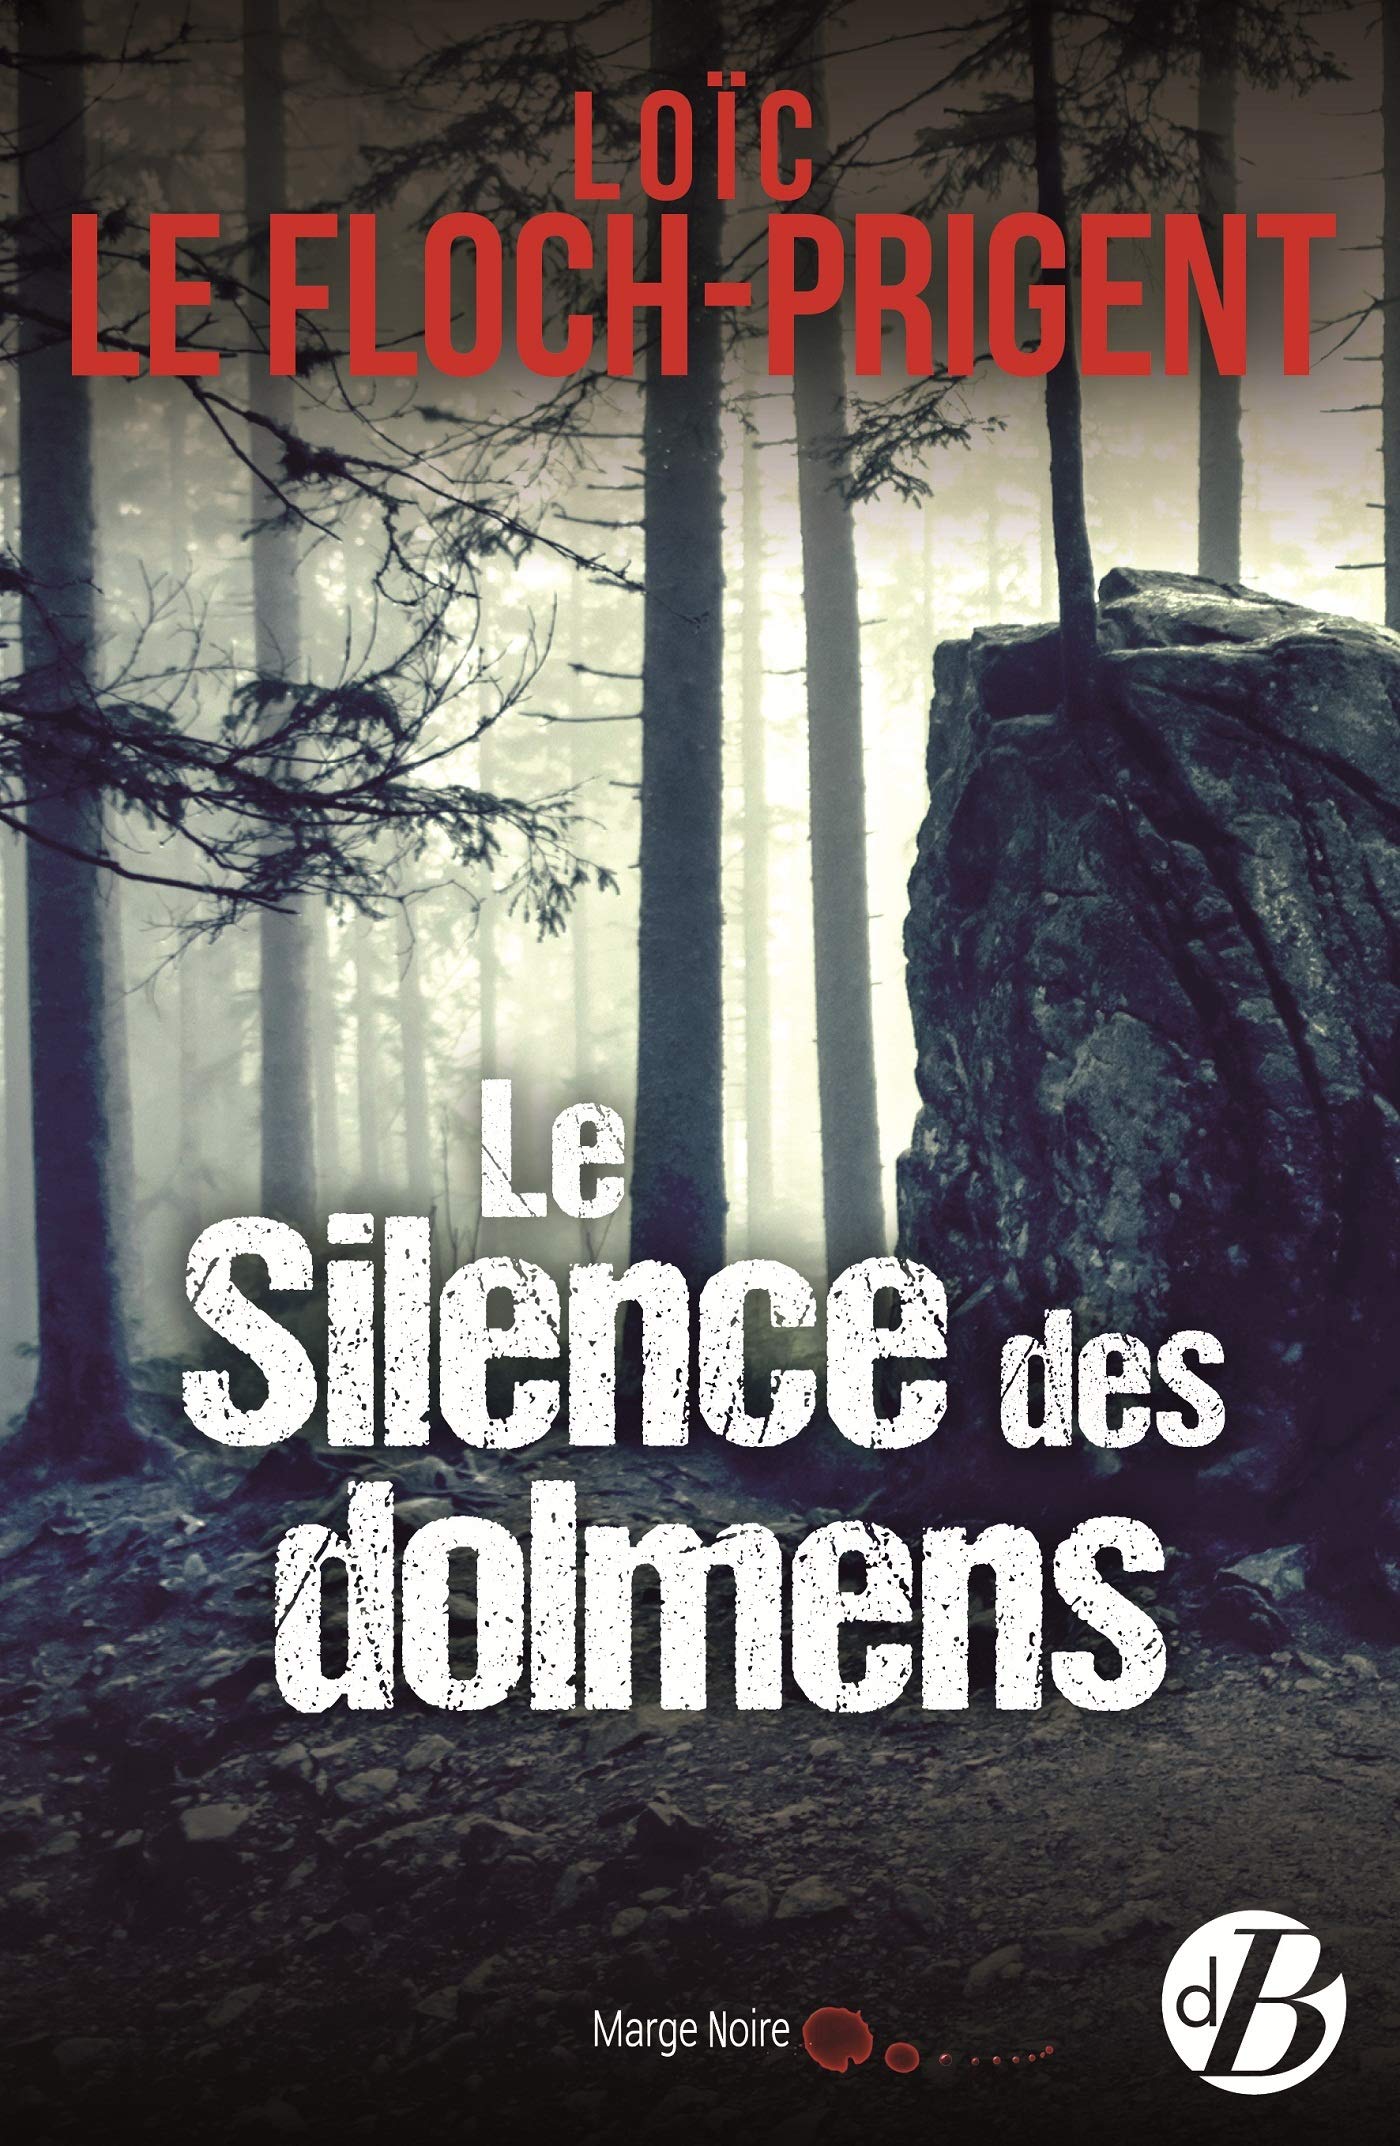 Le silence des dolmens